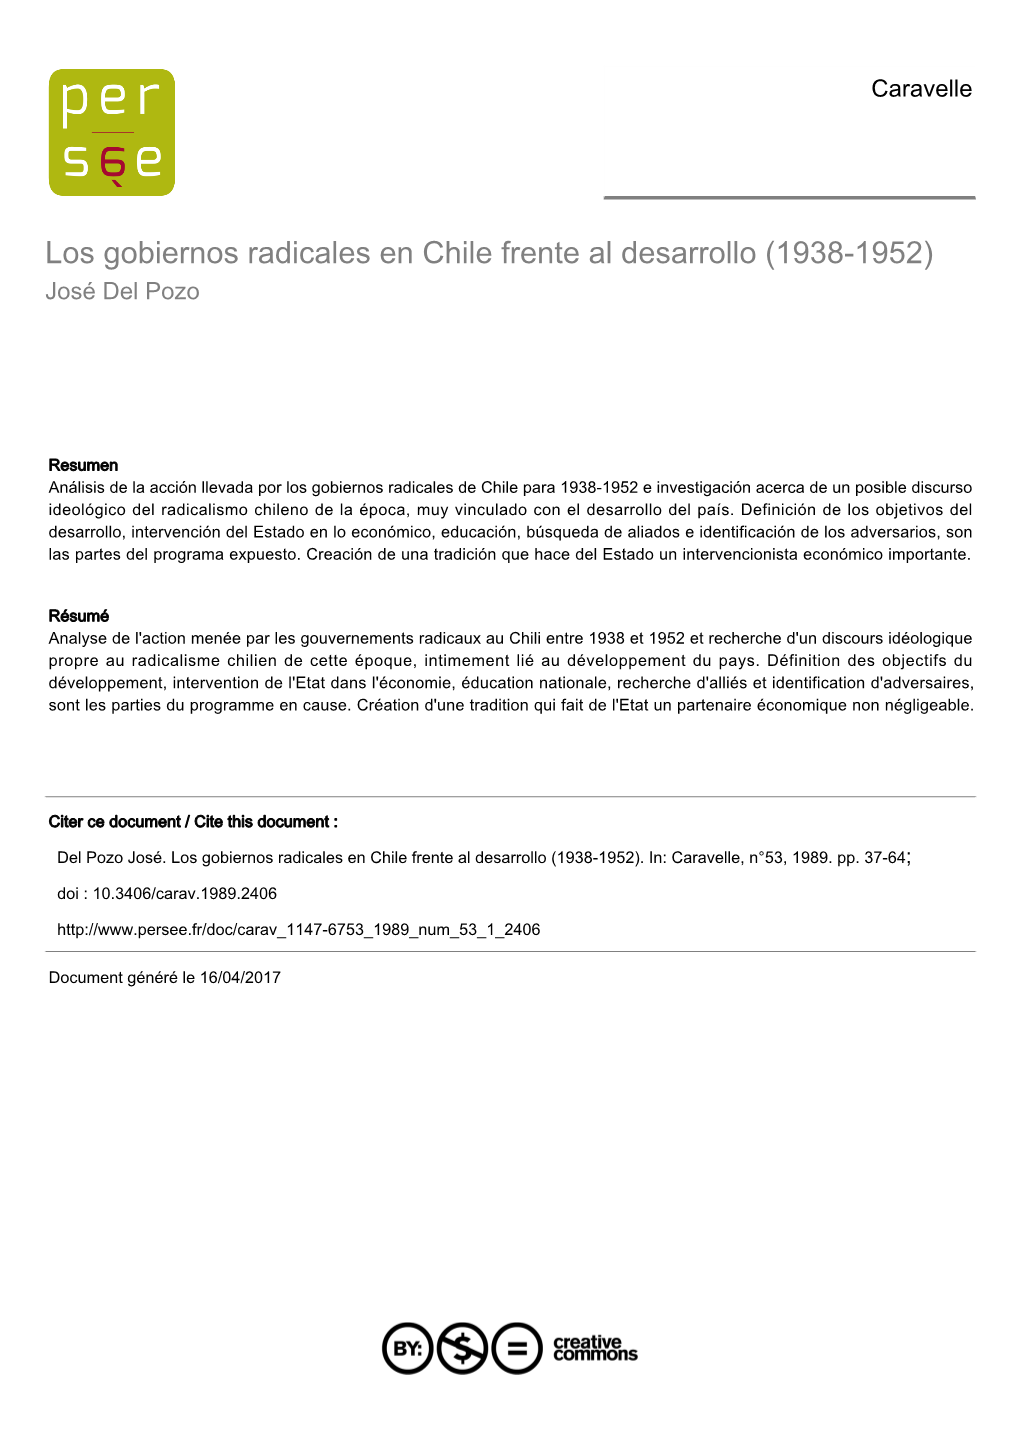 Los Gobiernos Radicales En Chile Frente Al Desarrollo (1938-1952) José Del Pozo